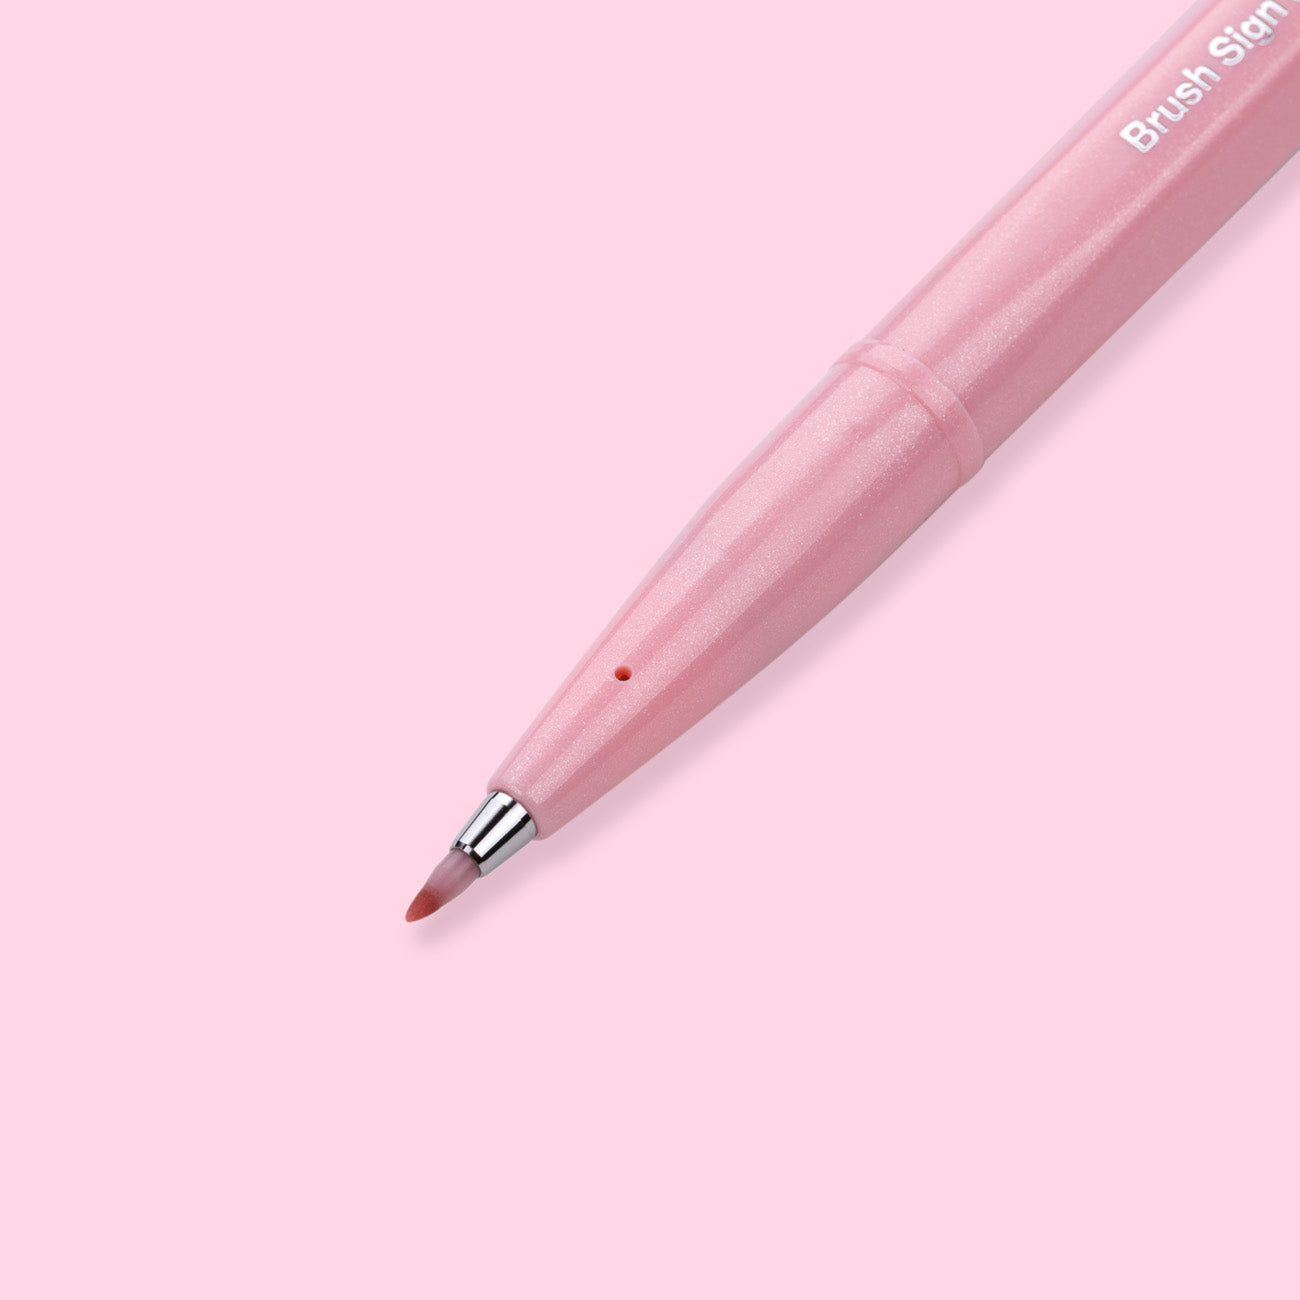 Pentel Sign Pen Brush Pink